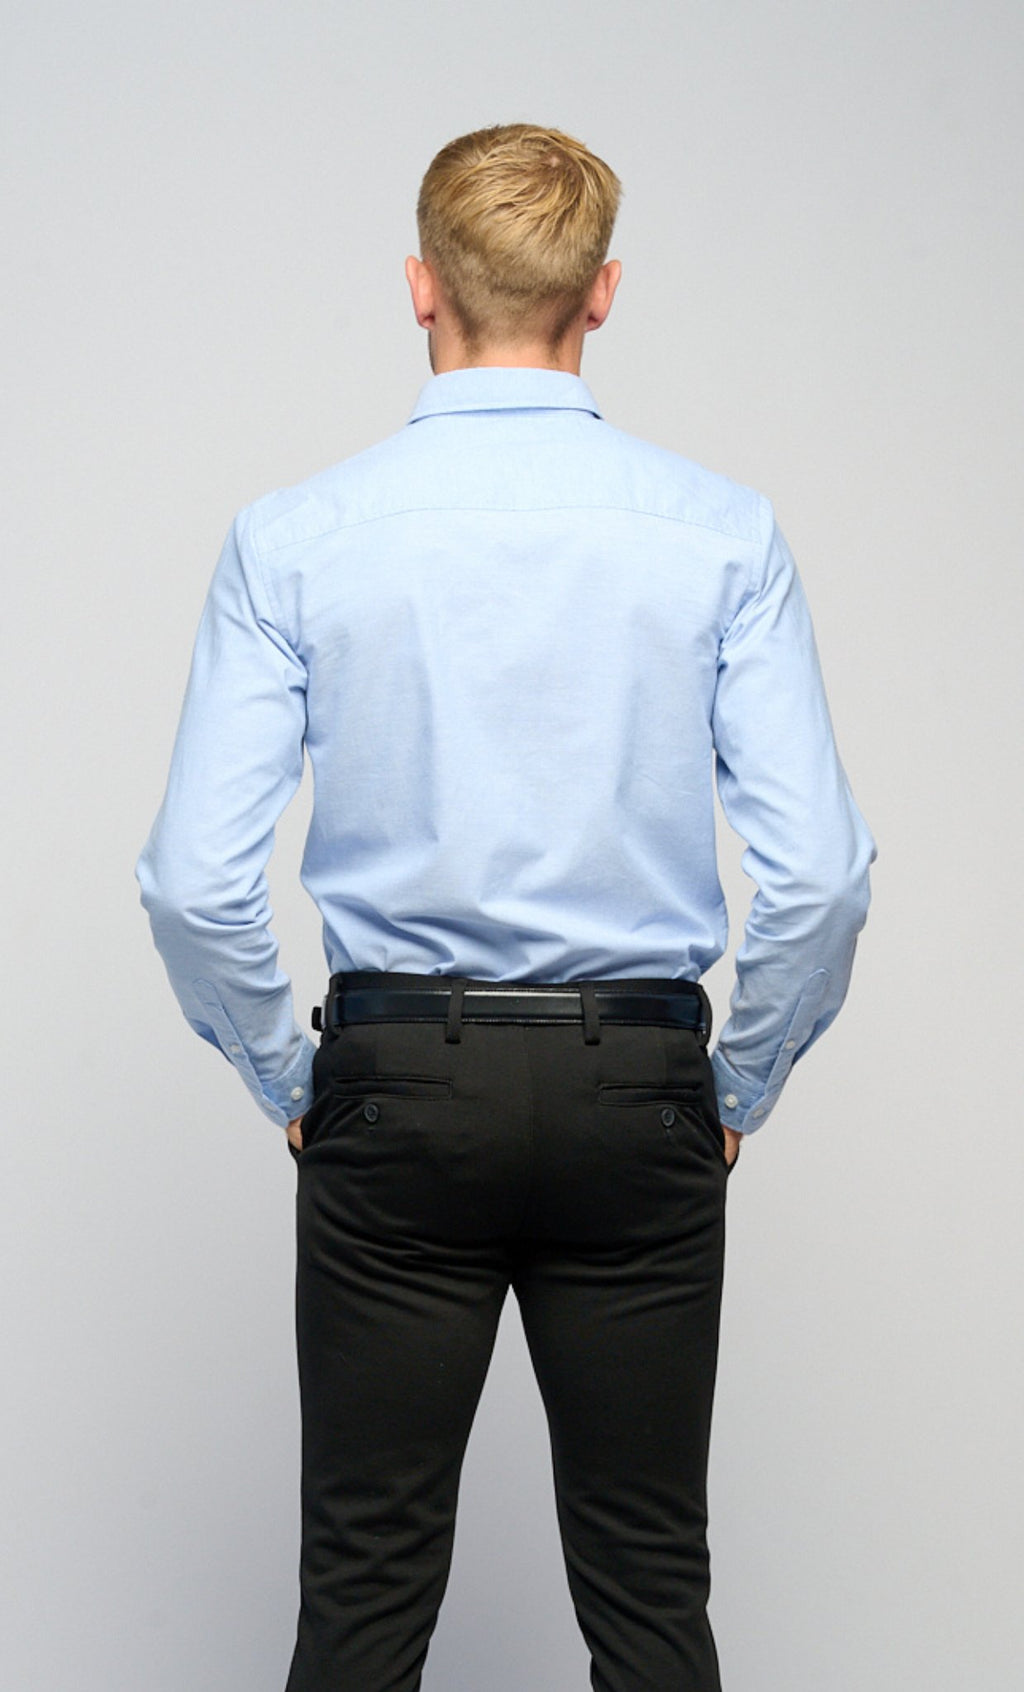 The Original Performance Oxford Shirt ™ ♠ - Cashmere Blue